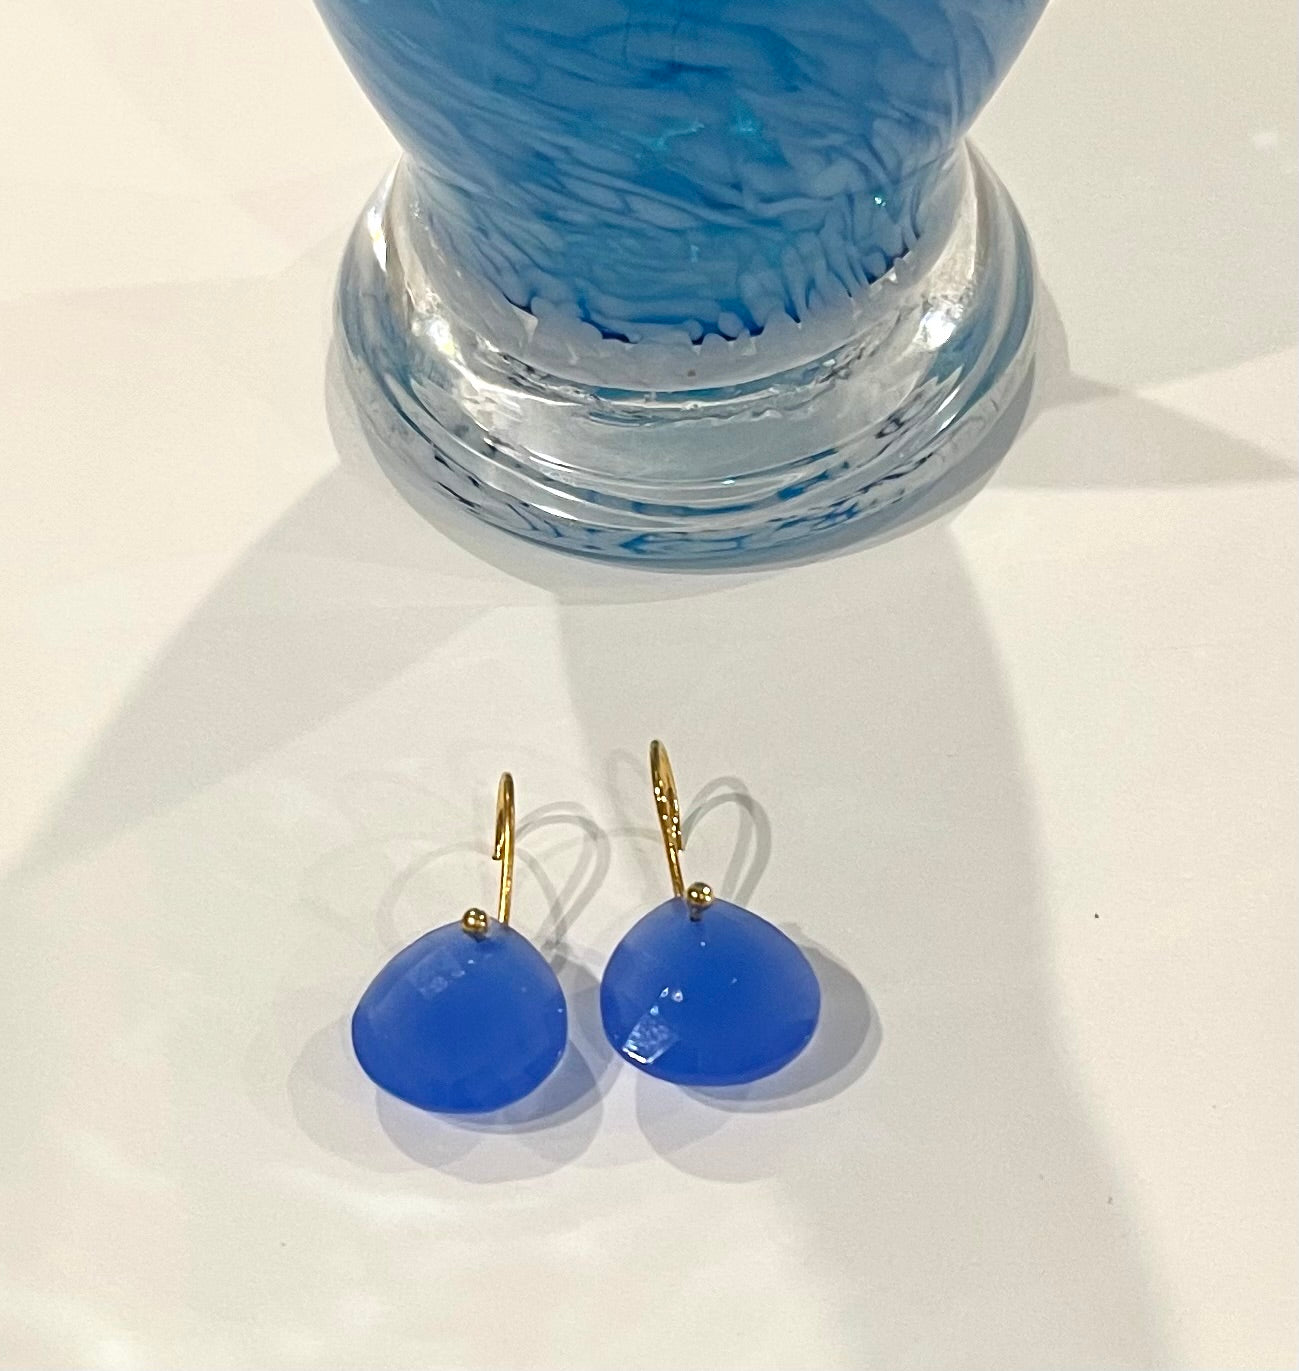 Briolette-Cut Sky Blue Chalcedony Gemstone Earrings 1"